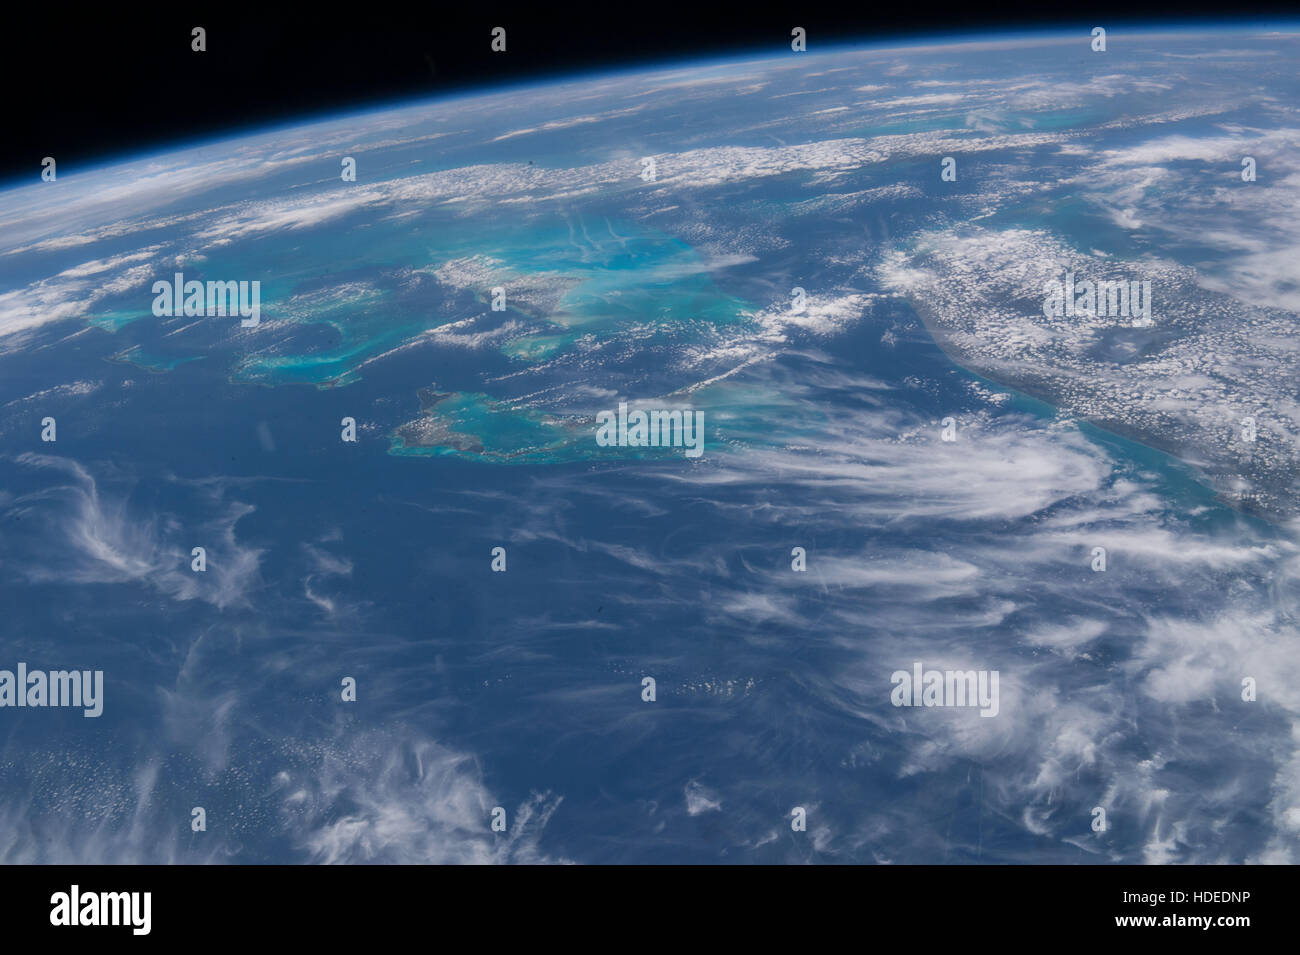 Eine Erde Beobachtung Satellitenbild aufgenommen von der NASA internationale Raumstation ISS-Expedition 47-Crew zeigt die Halbinsel Florida, Bahama Inselkette und Kuba 20. April 2016 in der Erdumlaufbahn. Stockfoto